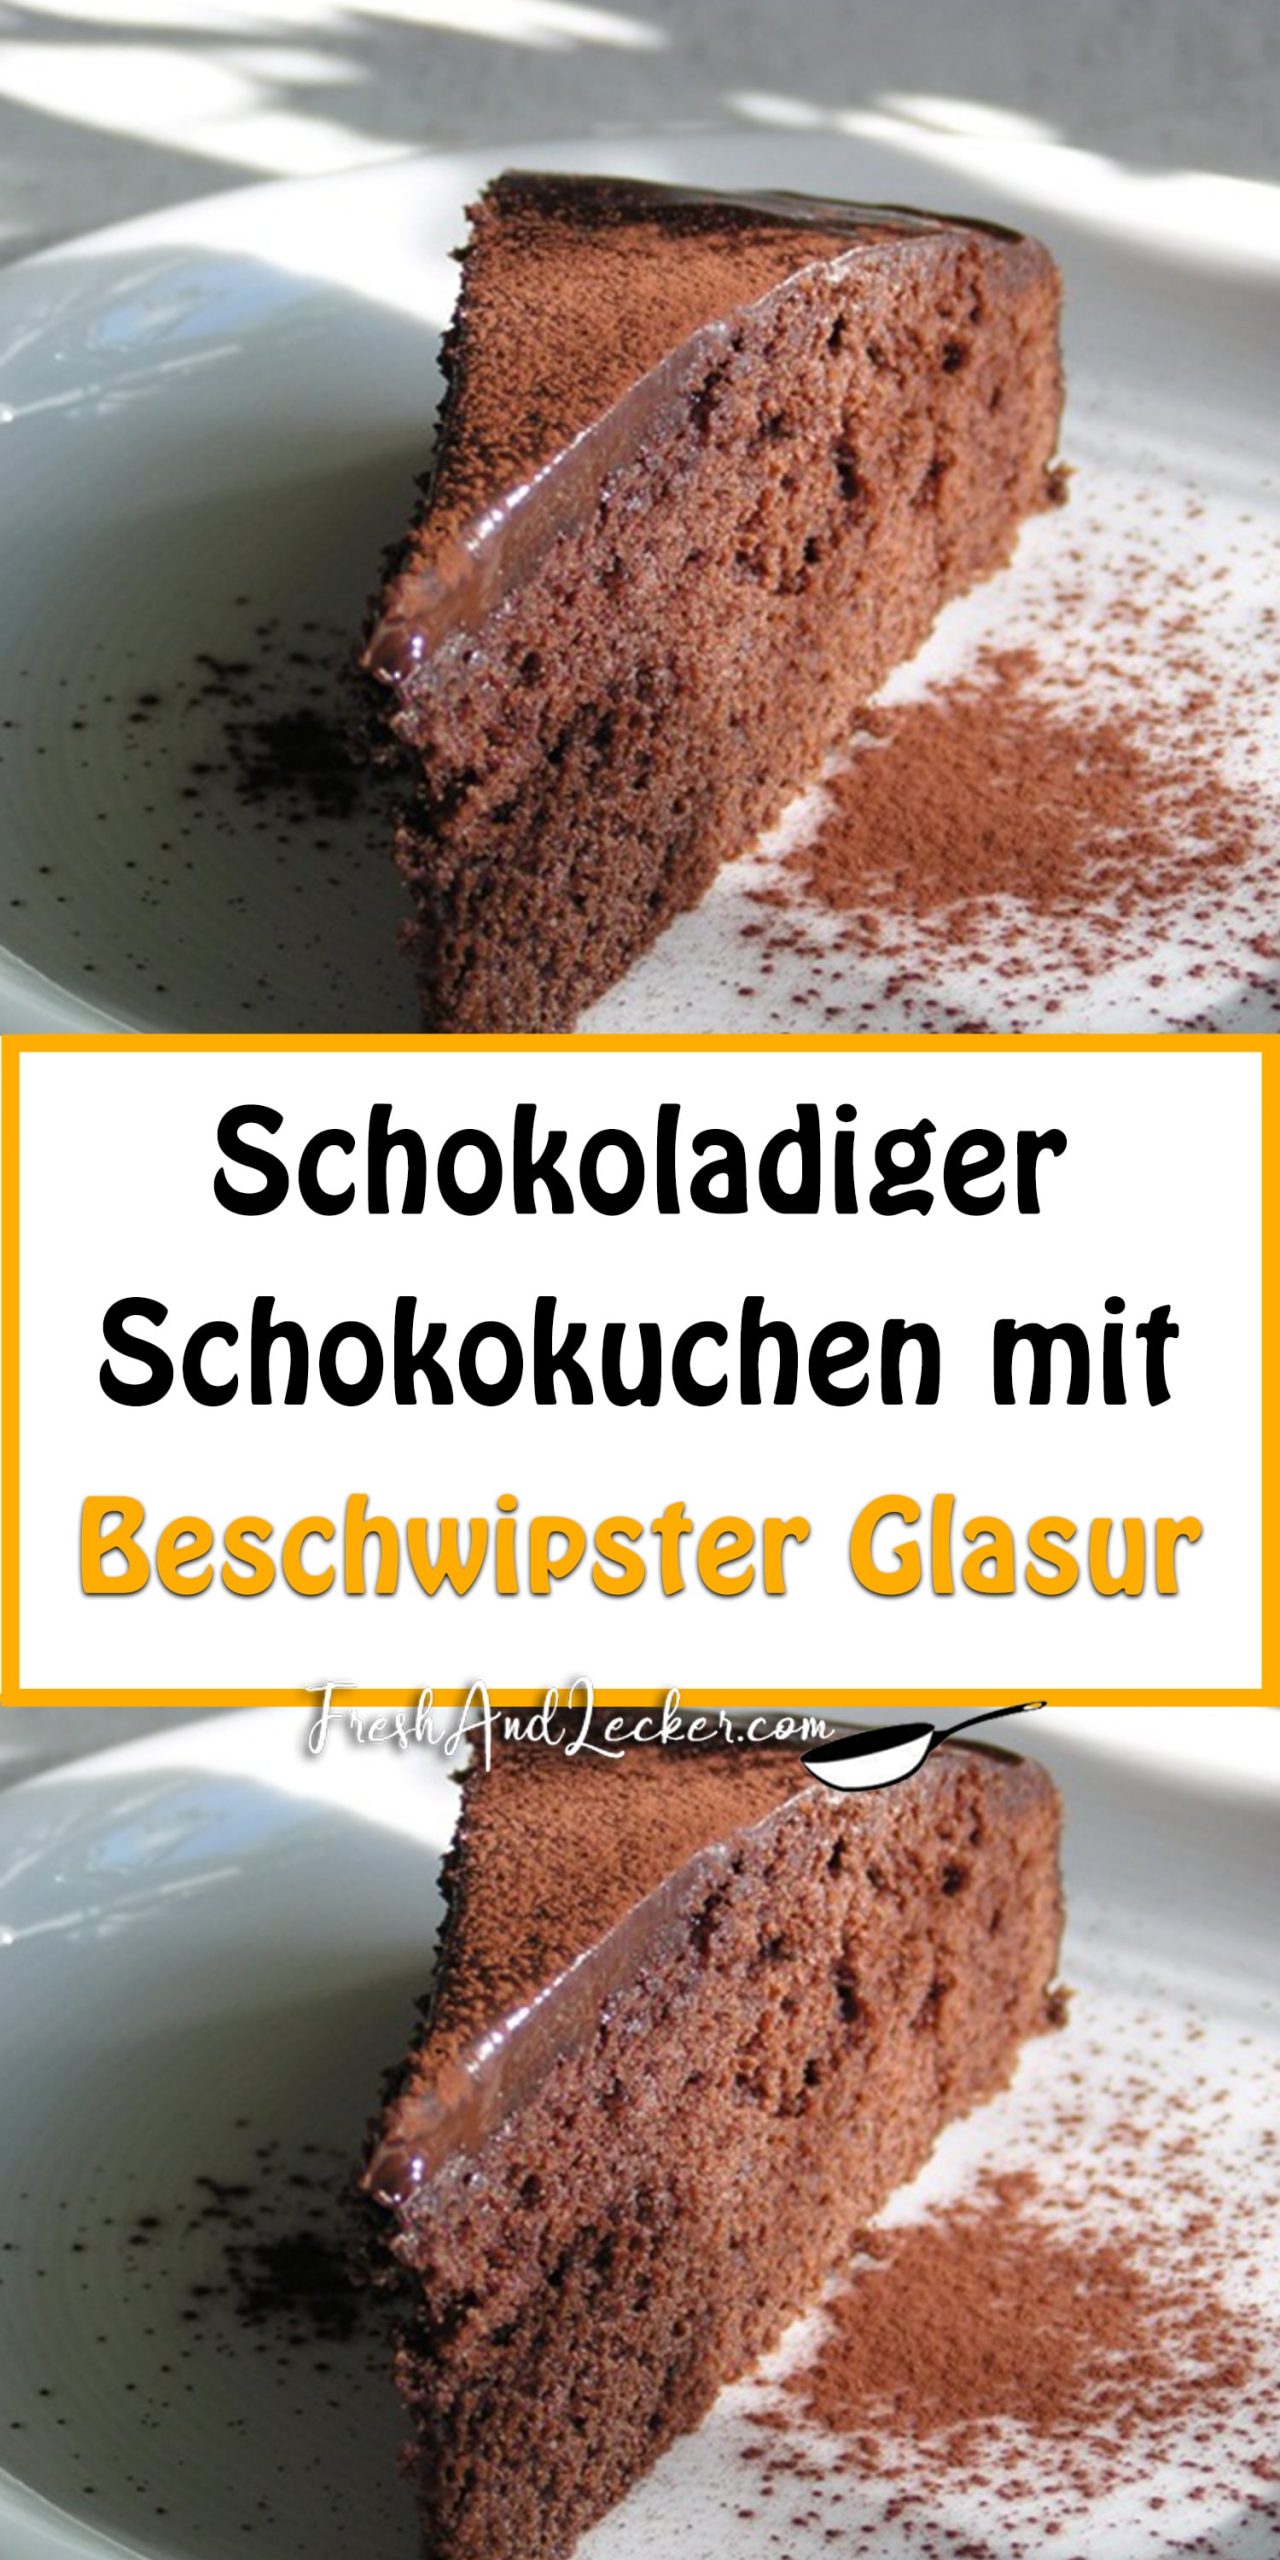 Schokoladiger Schokokuchen mit beschwipster Glasur - Fresh Lecker